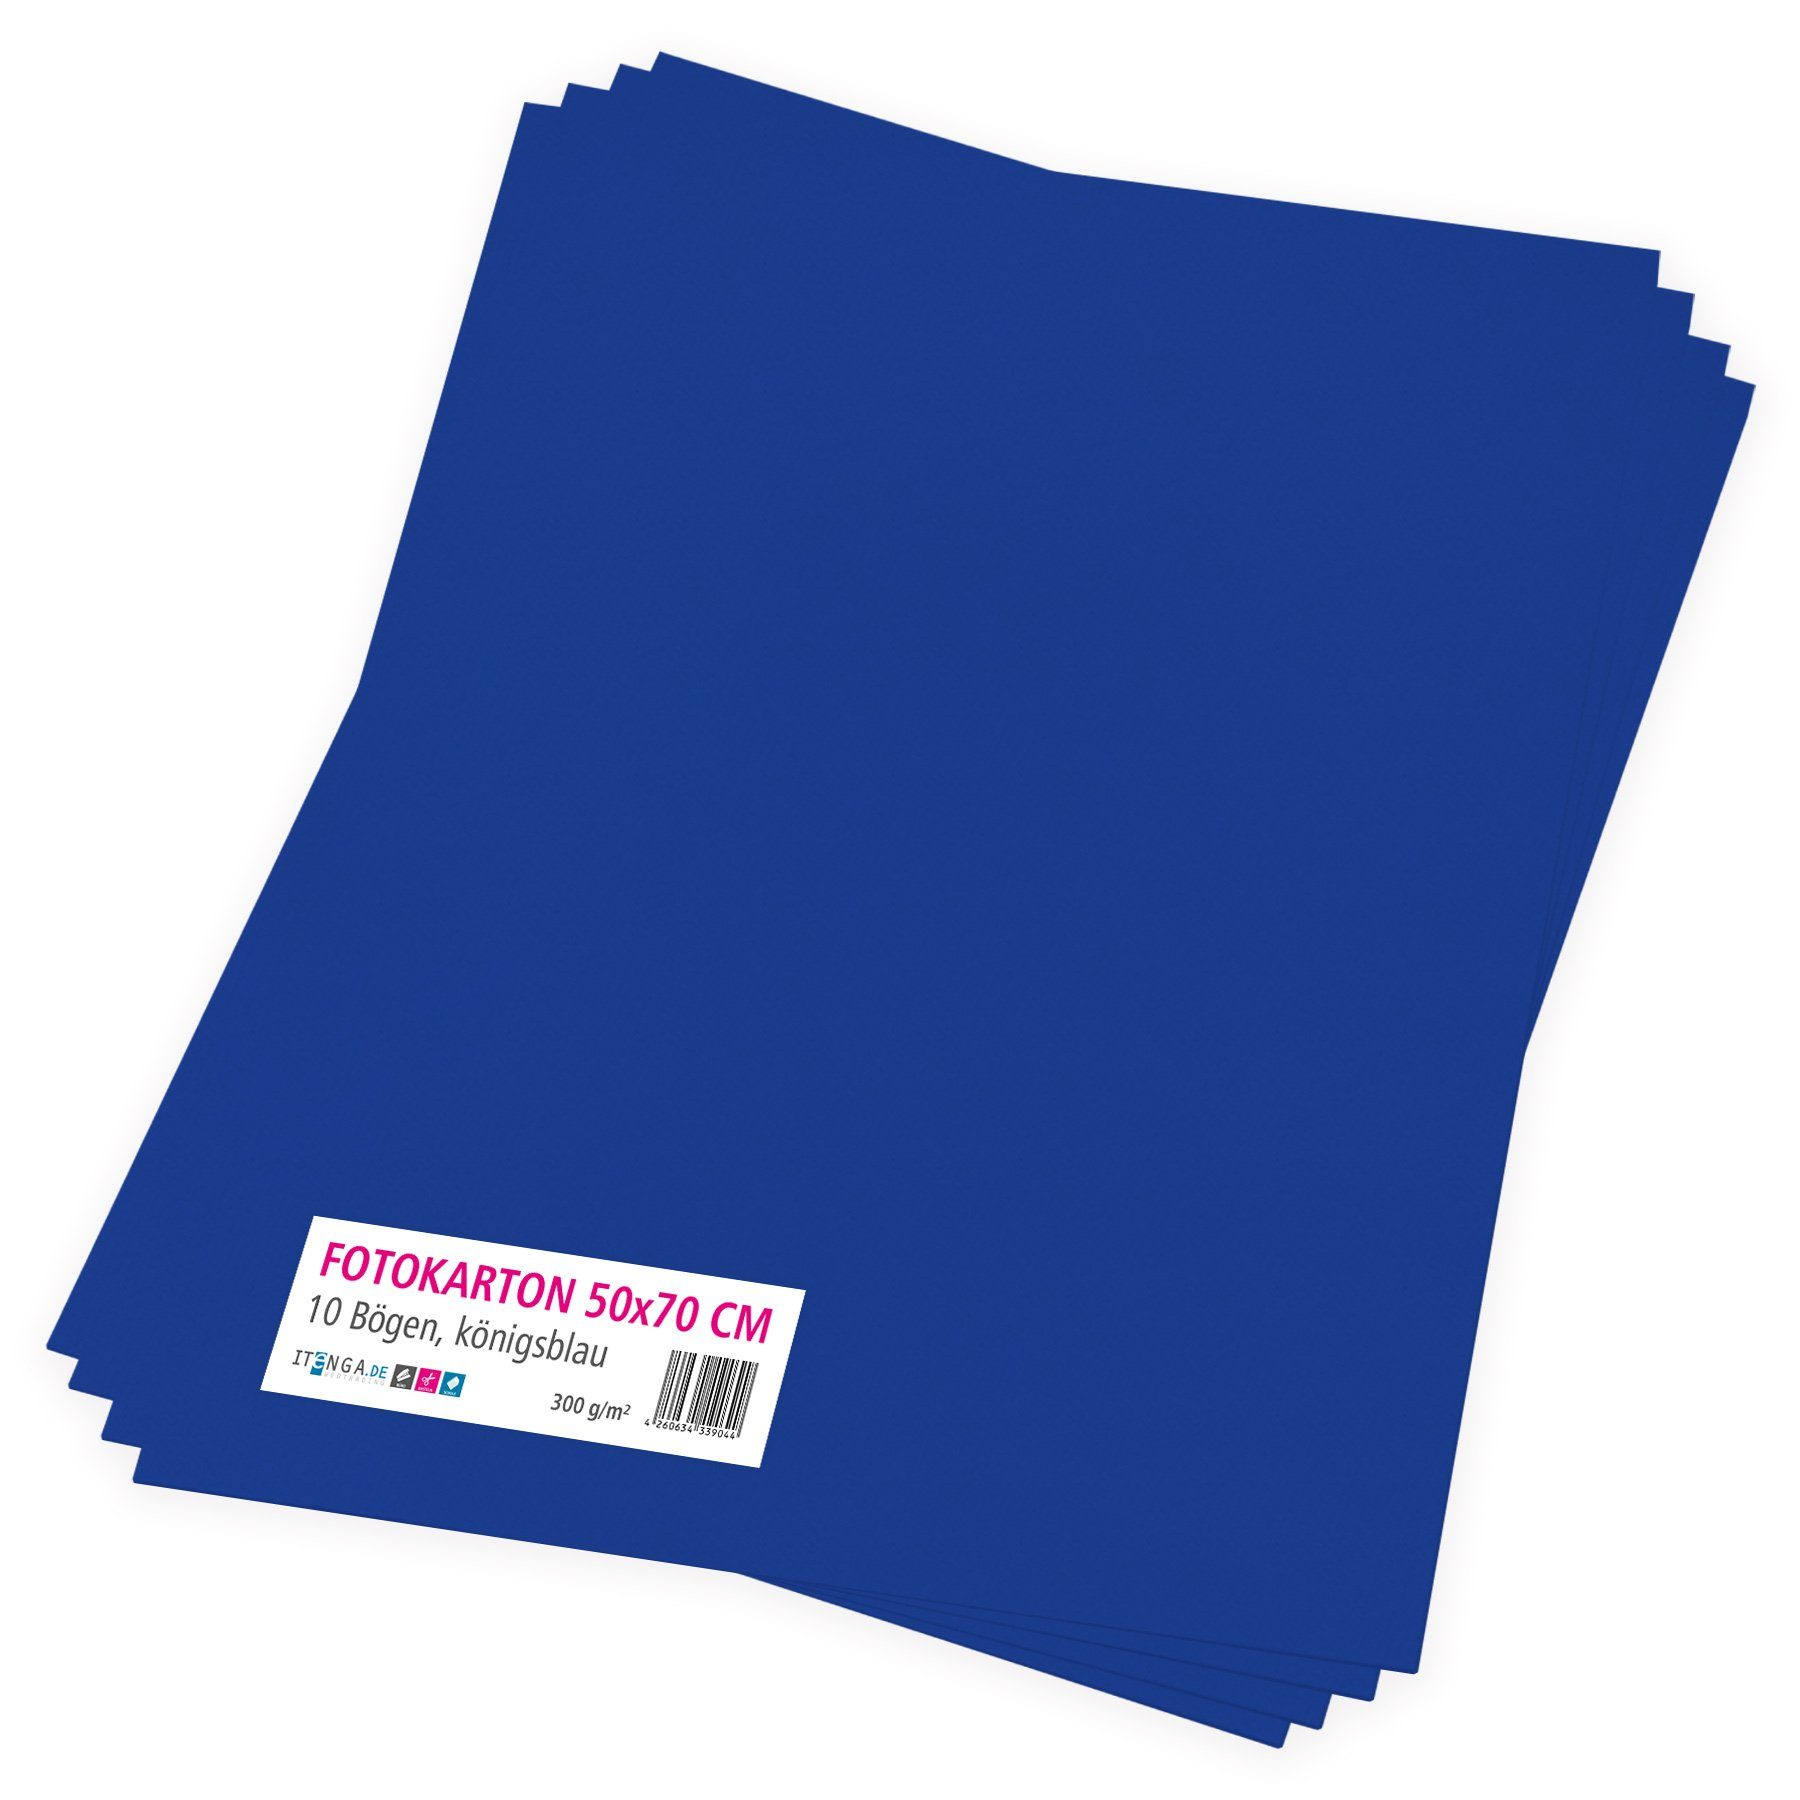 itenga Bastelkartonpapier - 50x70cm königsblau itenga 300g/m² Fotokarton 10